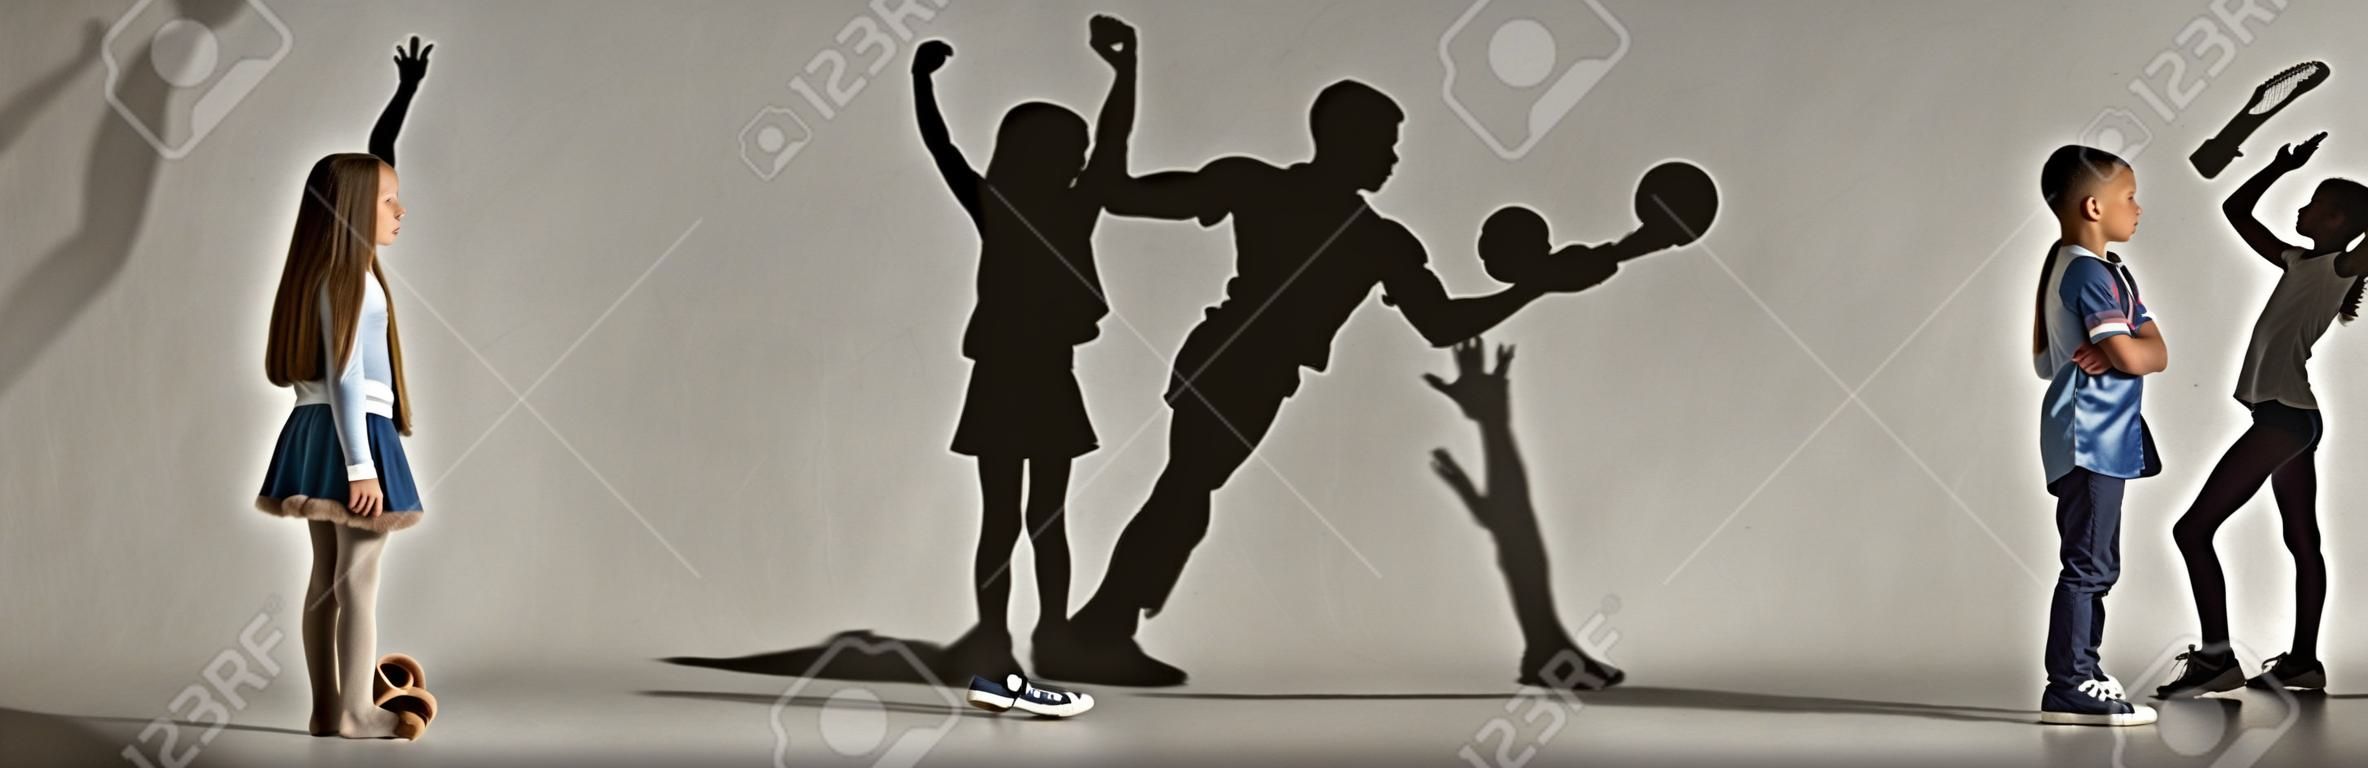 Infancia y sueña con un futuro grande y famoso. Imagen conceptual con niño y niña y sombras de atleta en forma, jugador de hockey, culturista, bailarina. Collage creativo de 2 modelos.